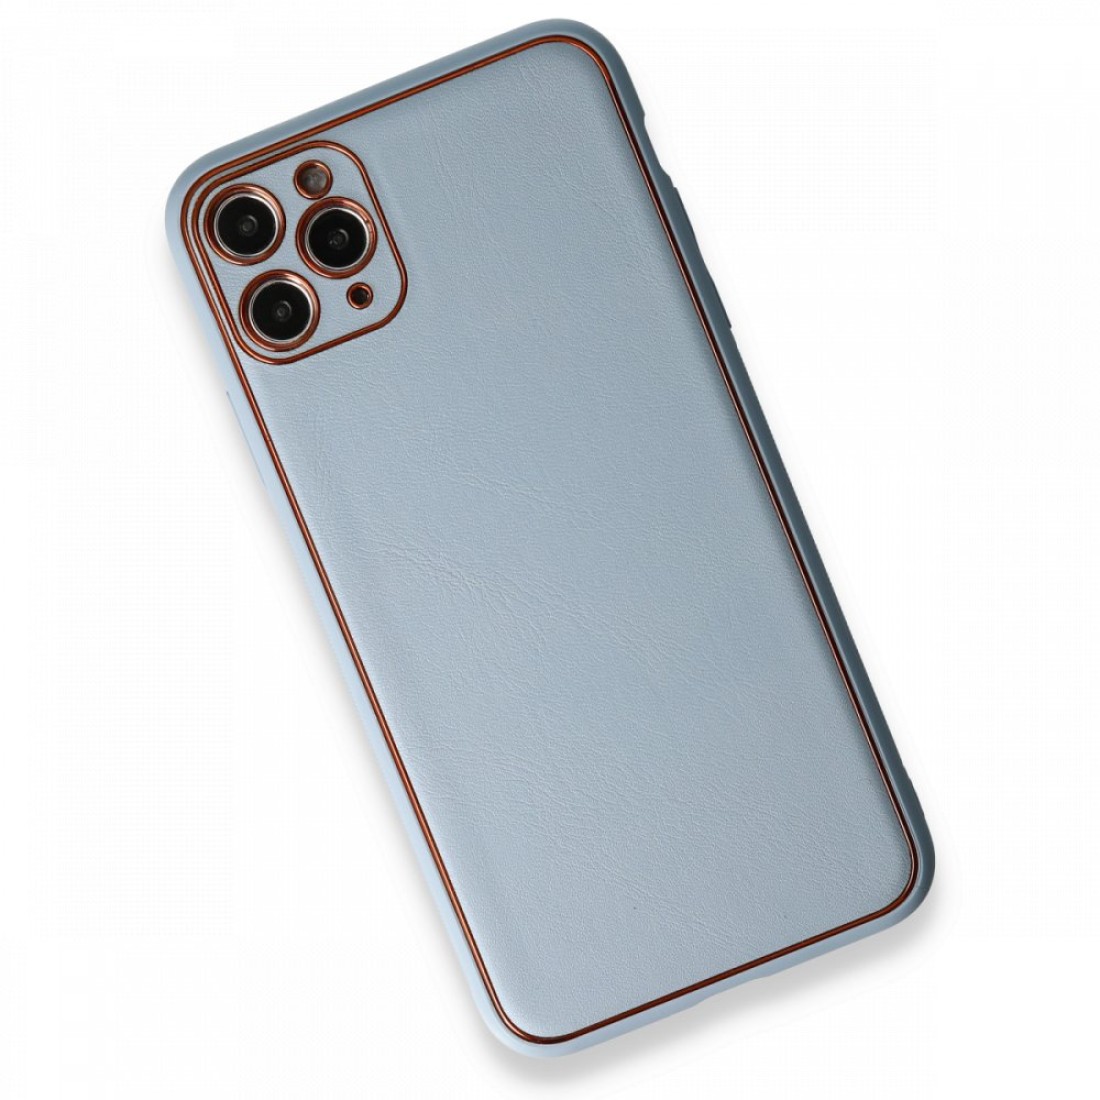 Apple iPhone 11 Pro Max Kılıf Coco Deri Silikon Kapak - Açık Mavi